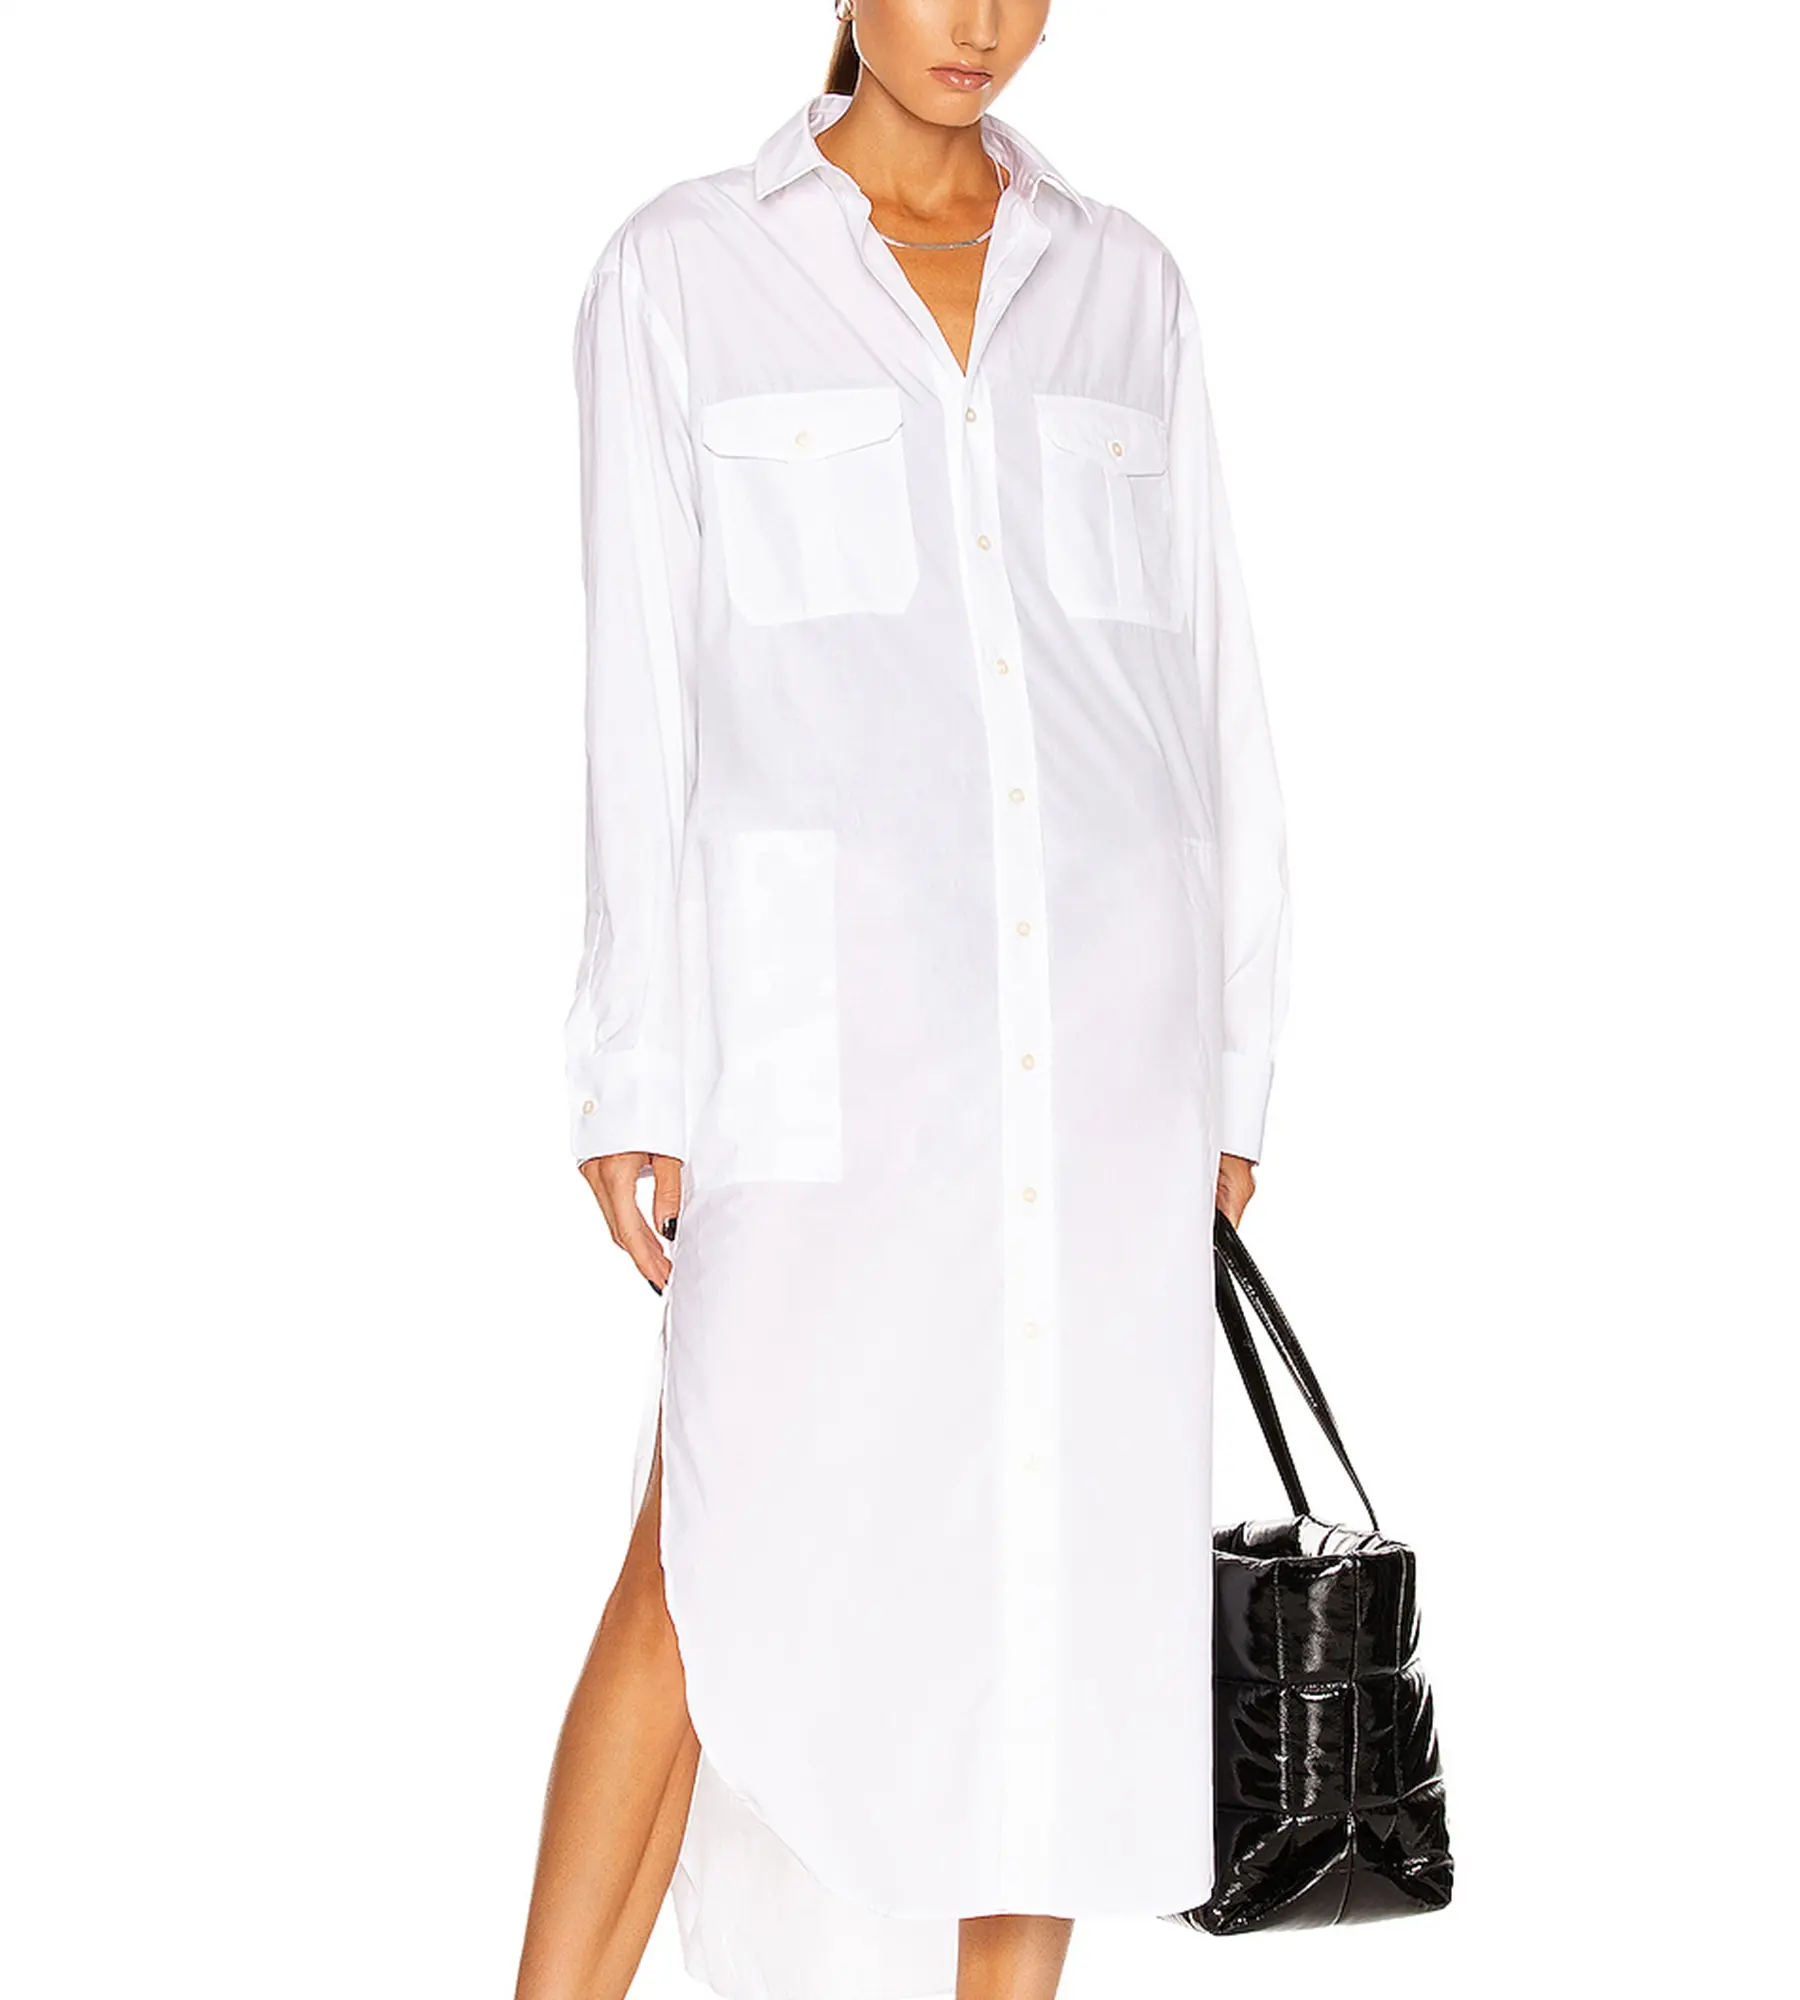 ホワイト長袖ボタンポケットデザインラージサイズルーズレディースカジュアルデイリーロングシャツドレス